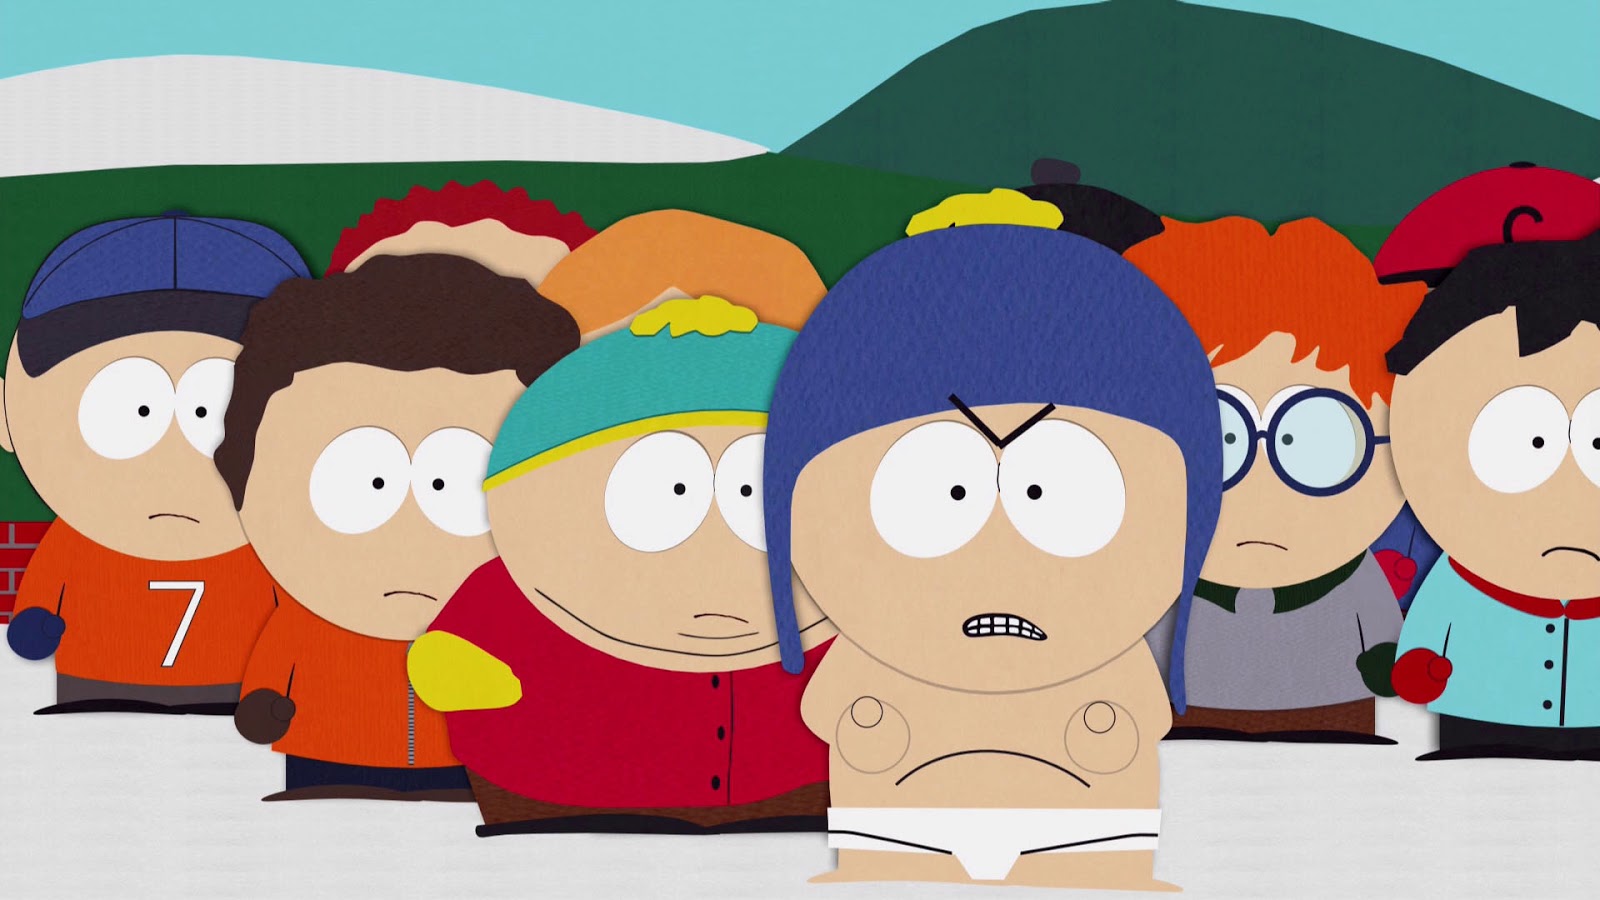 South Park - "Tweek vs. Craig" HD Screen Captures.